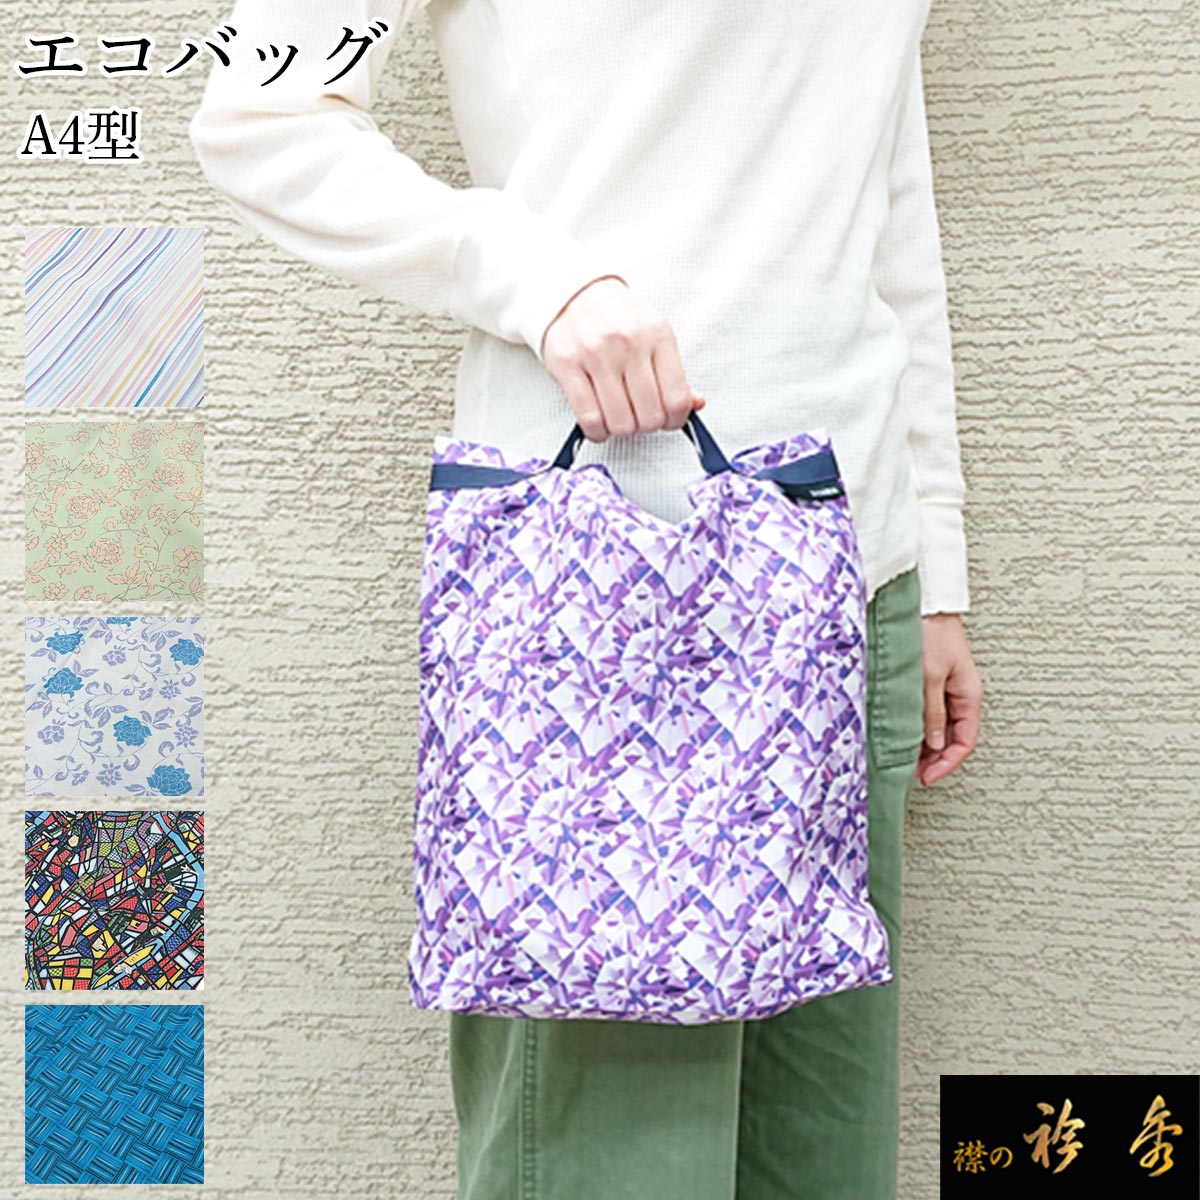 衿秀 公式 エコバッグ えこばっぐ 税込 送料無料 『eco』 エコ bag レジ袋 洗える かわいい コンパクト 日本製 襟の衿秀